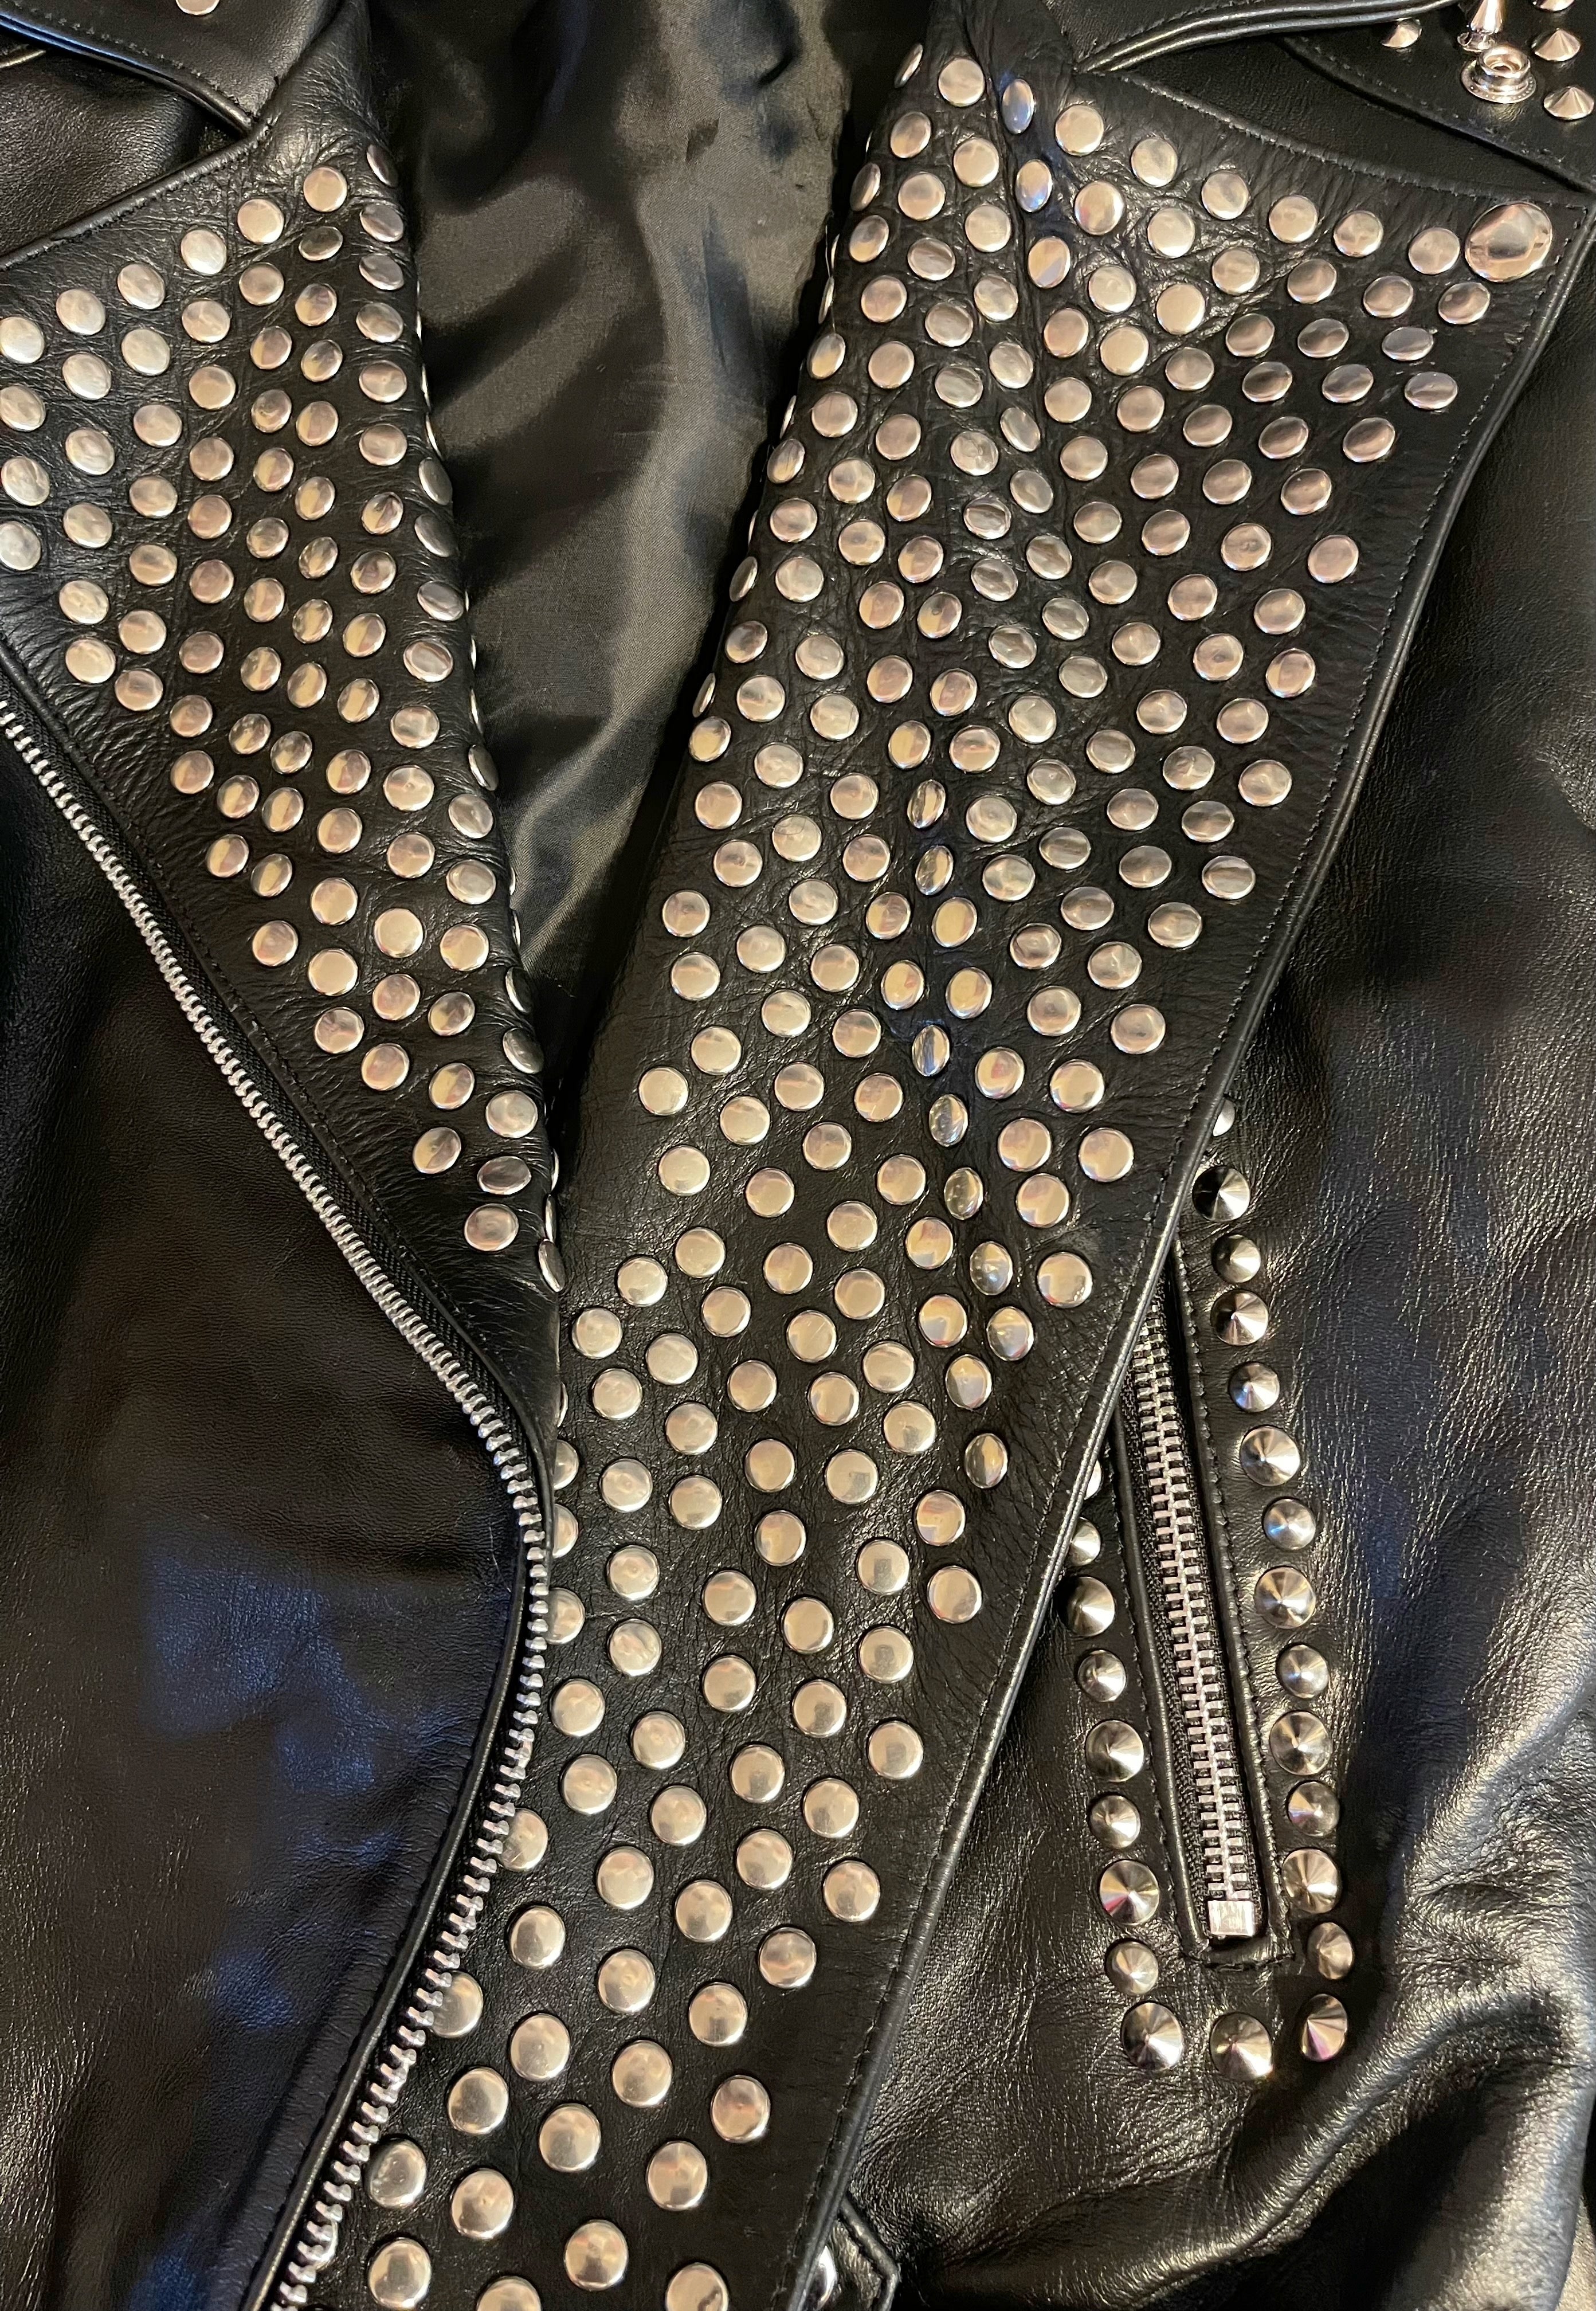 GOLDxTEAL silver metal embellished leather biker jacket.